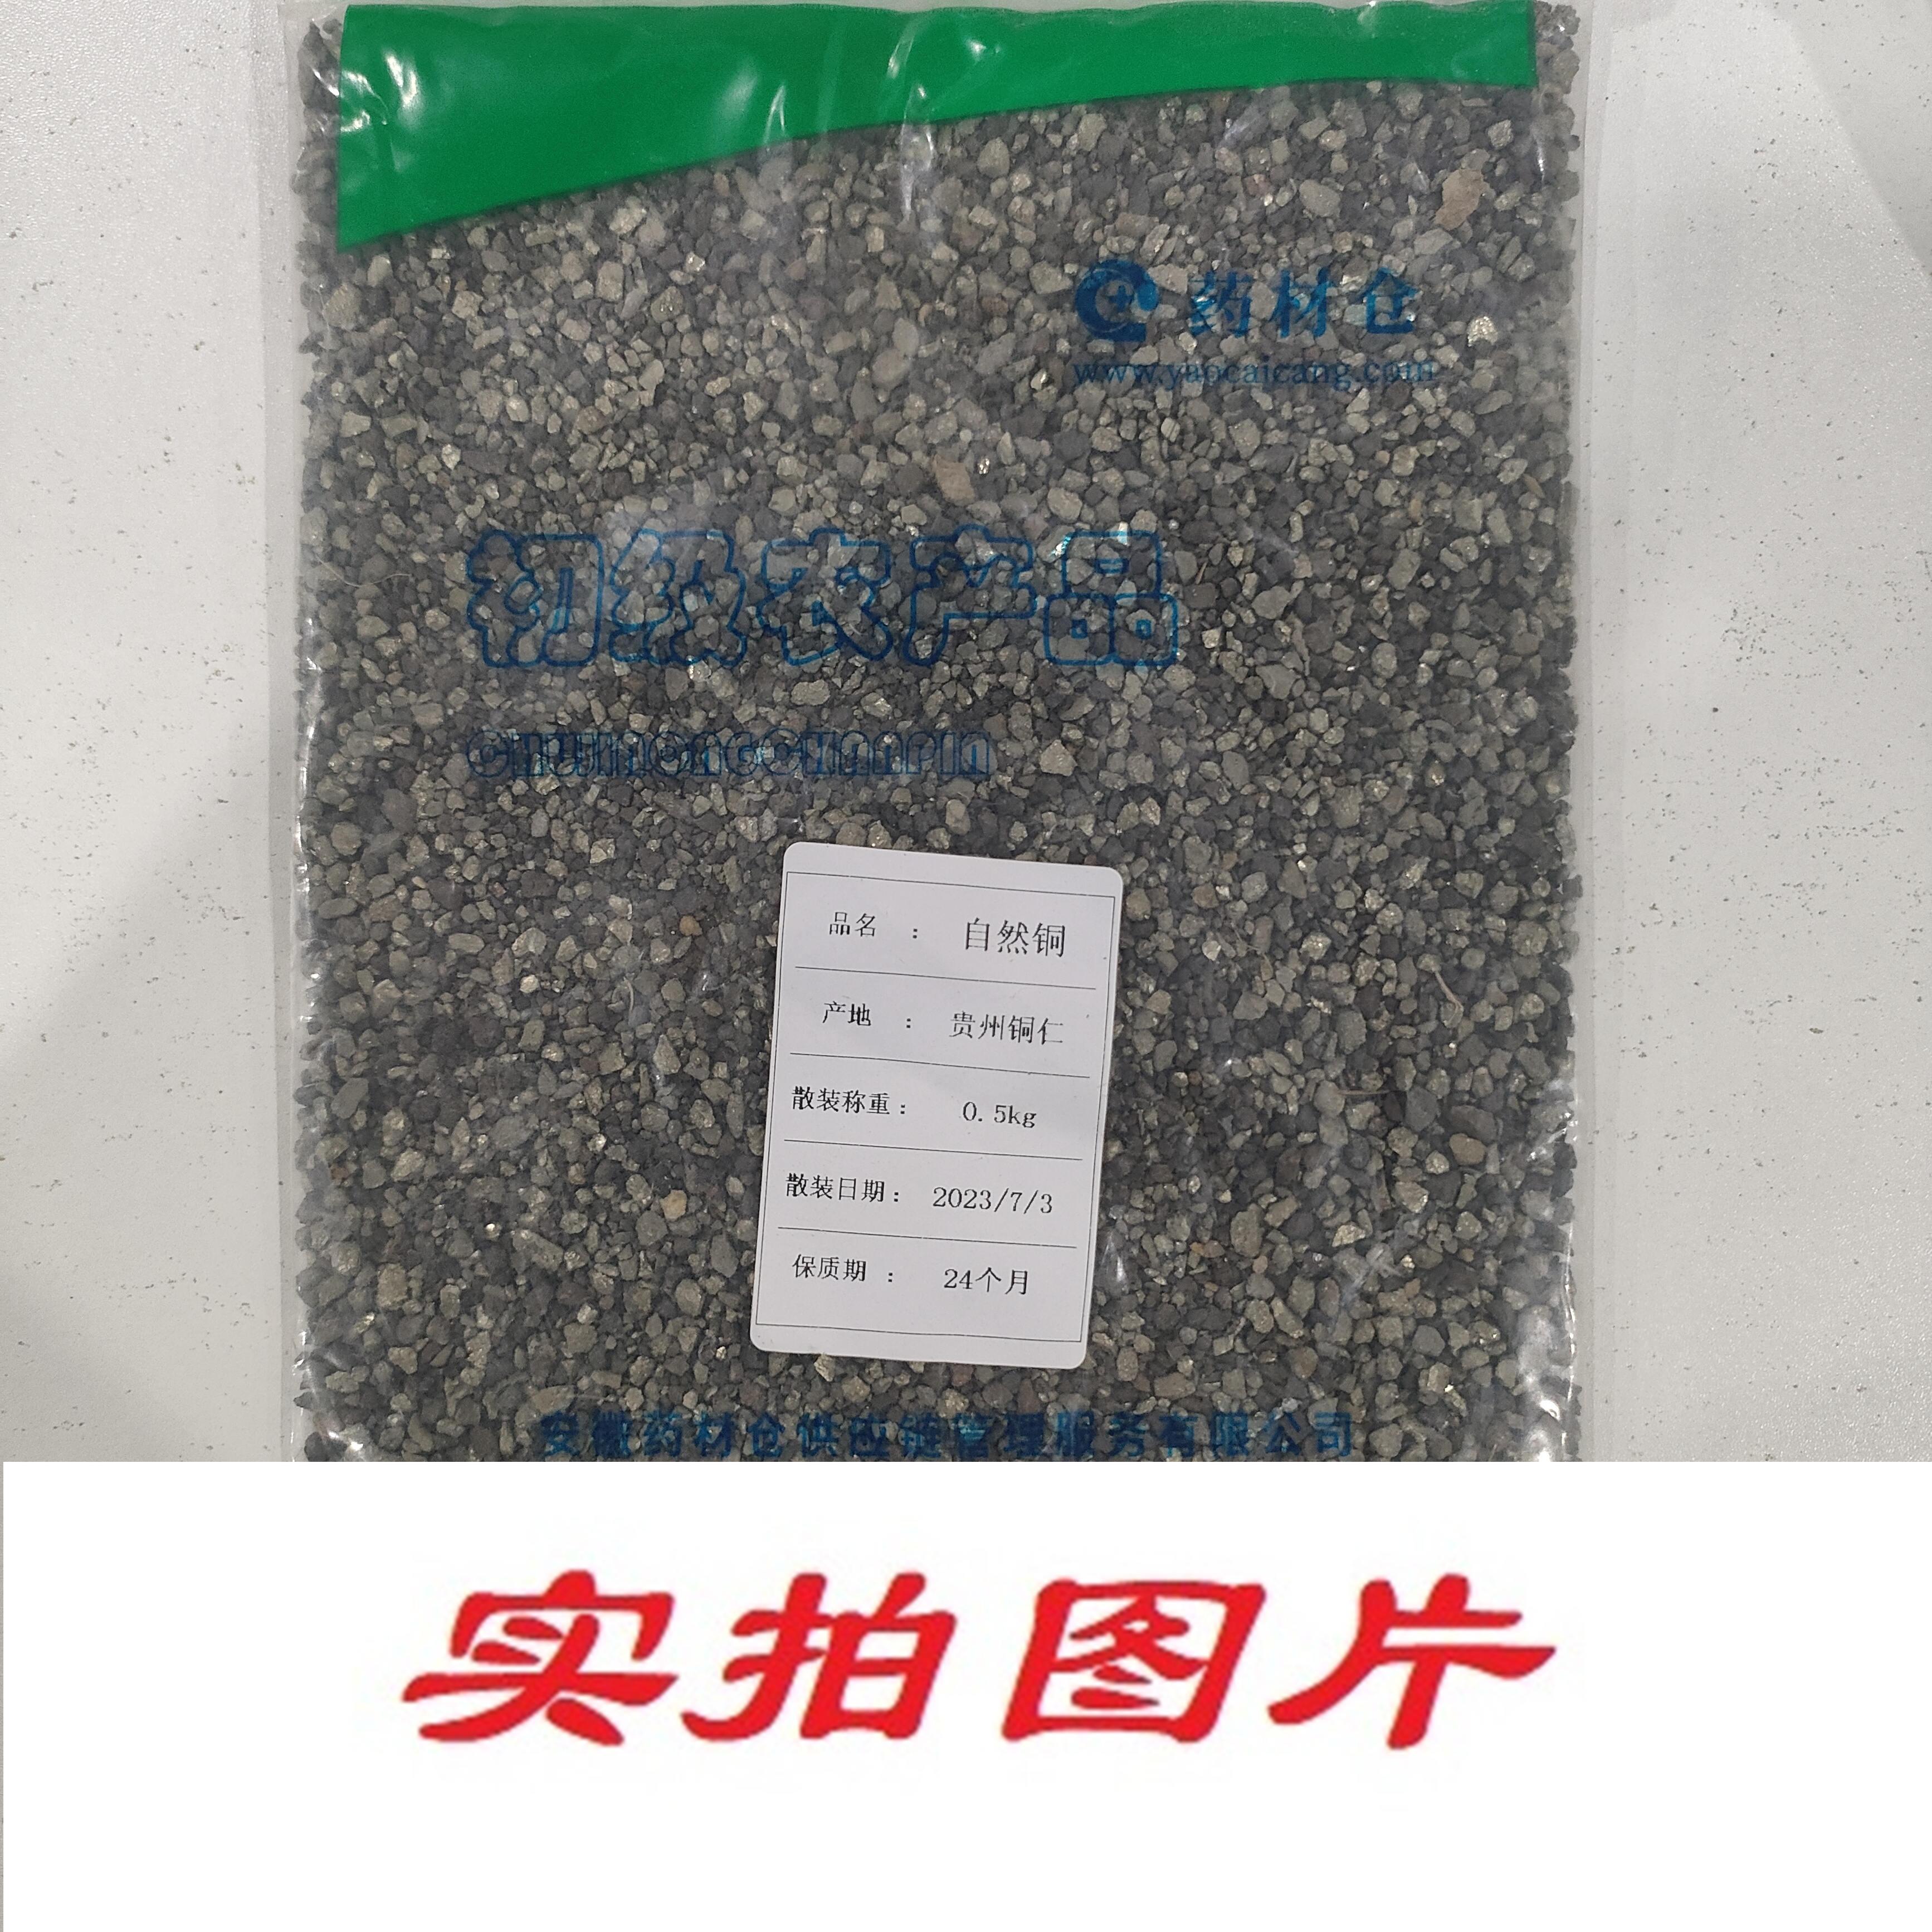 【】自然铜0.5kg-农副产品